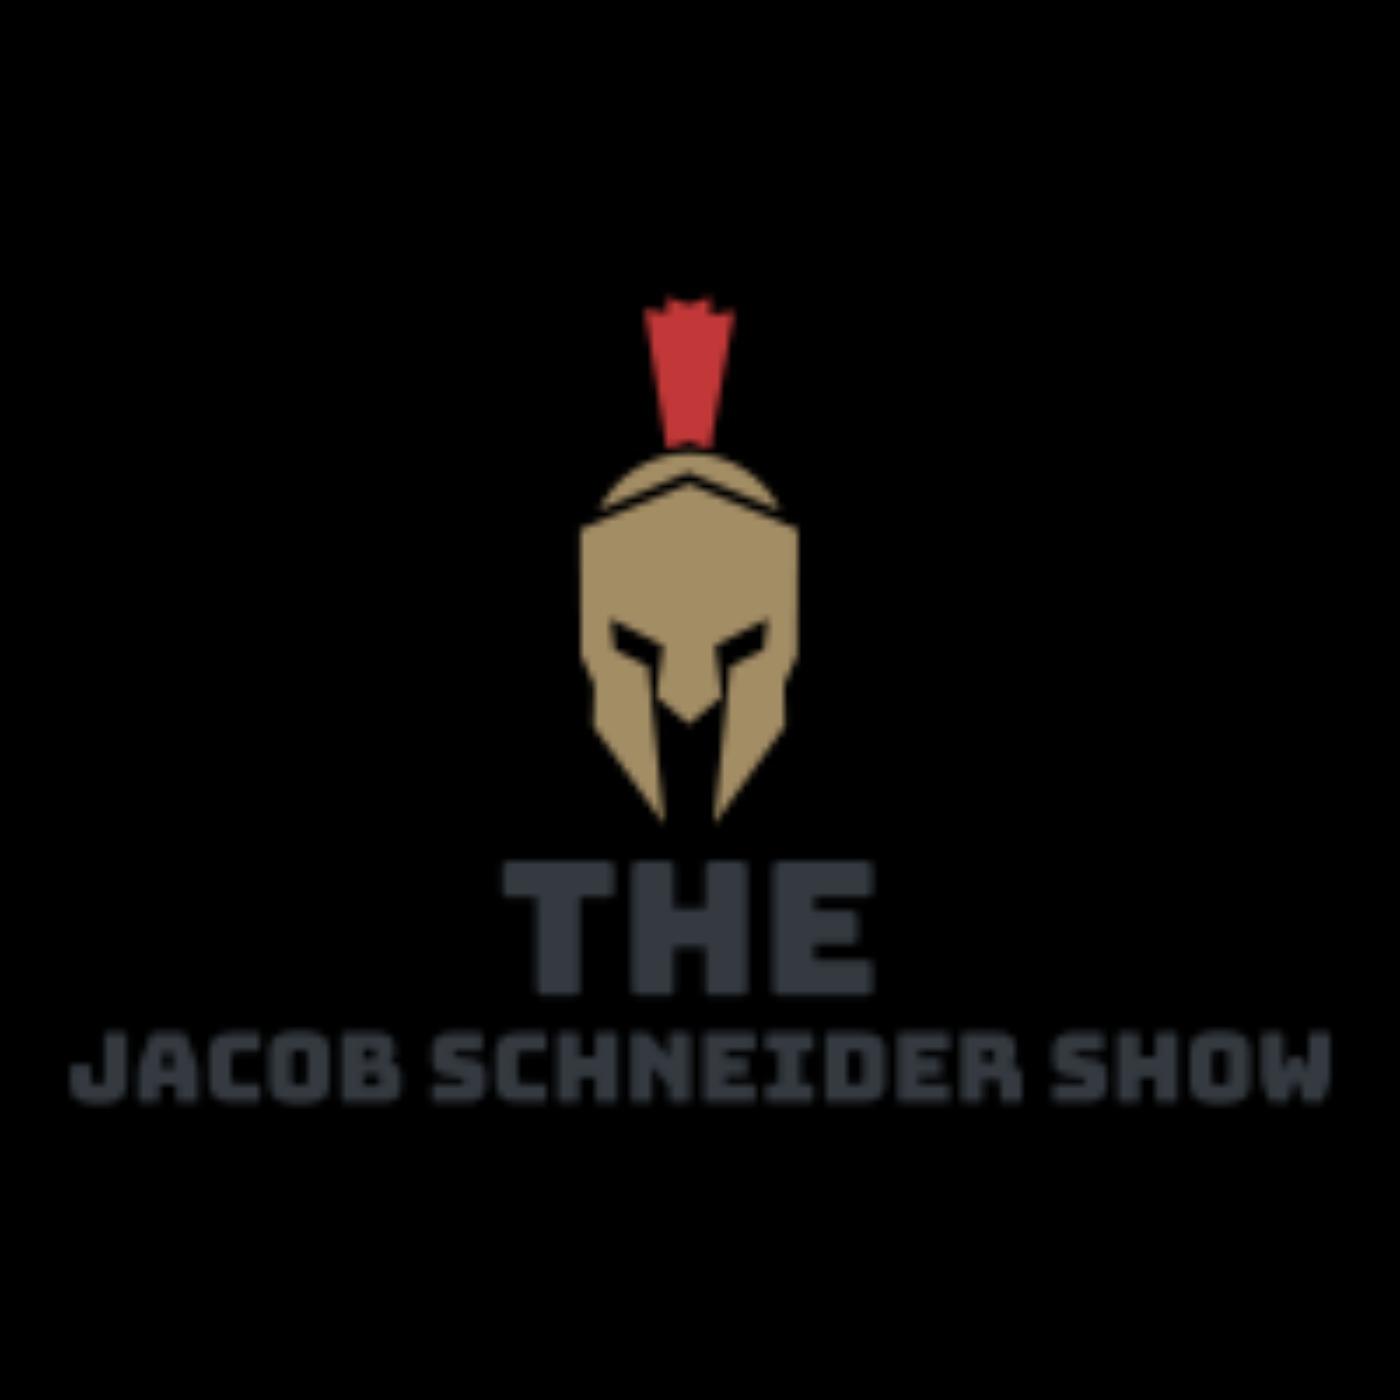 The Jacob Schneider Show